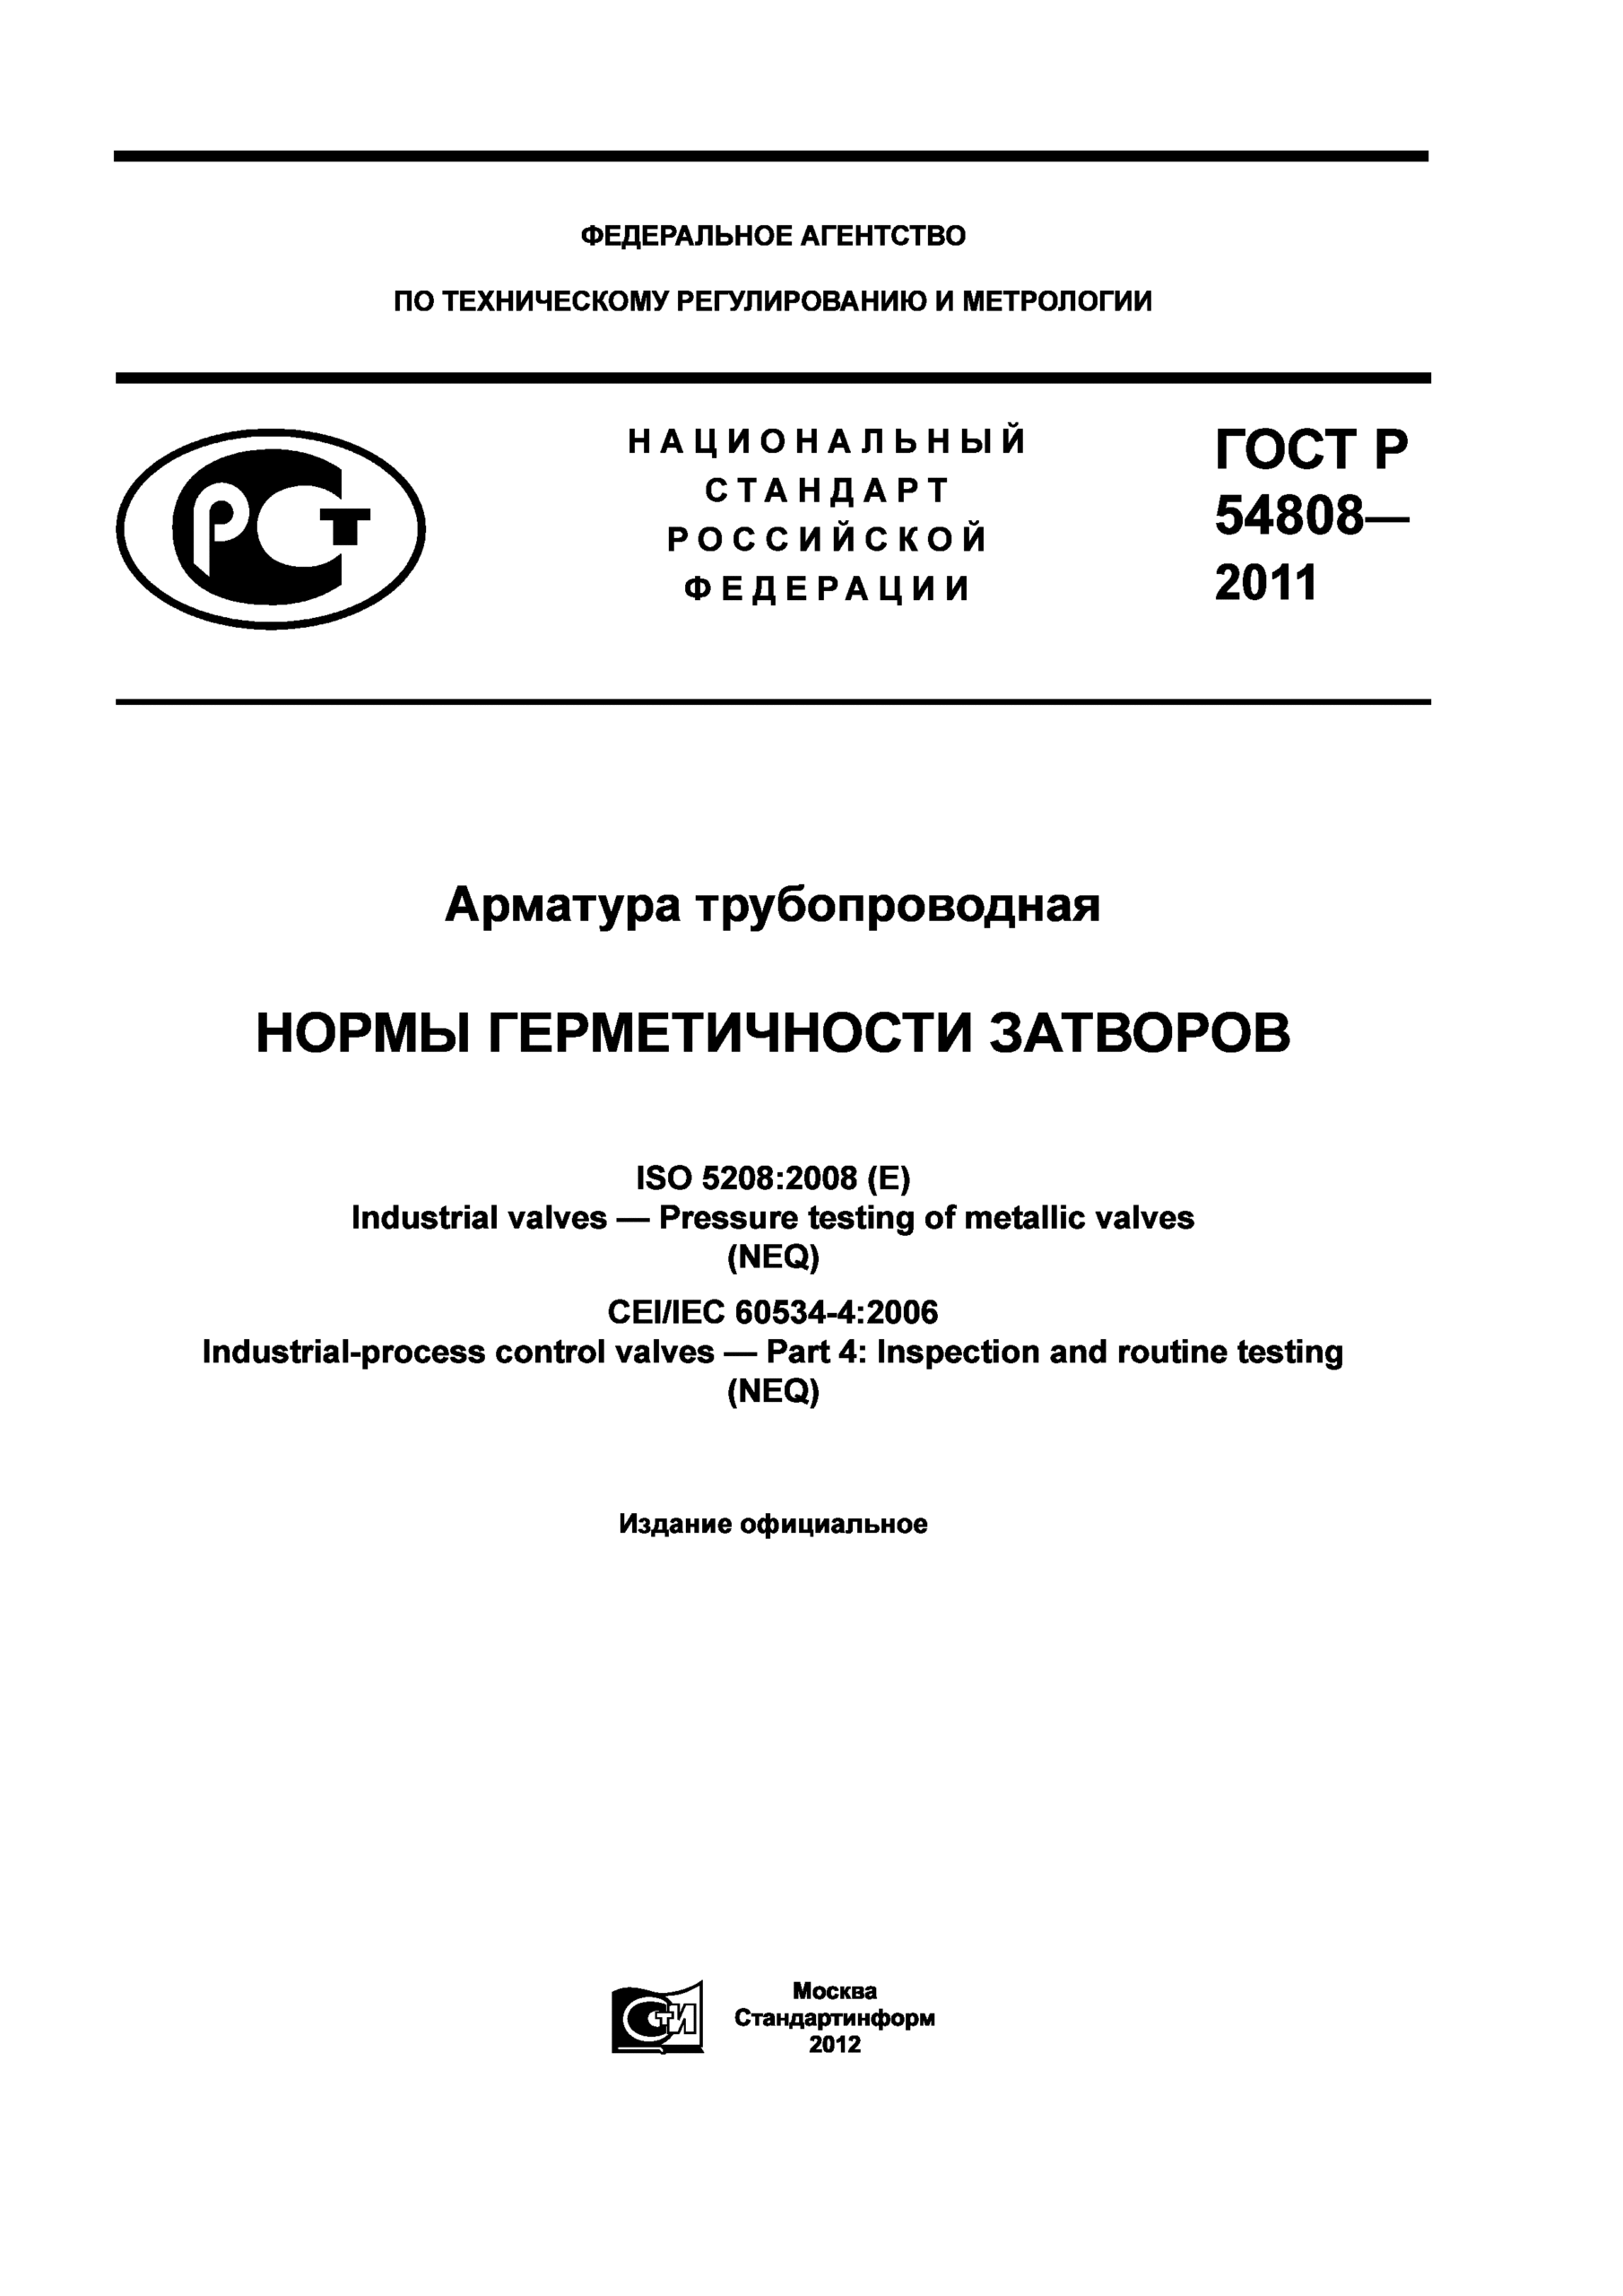 Условия контракта [08х08] (2011) SATRip